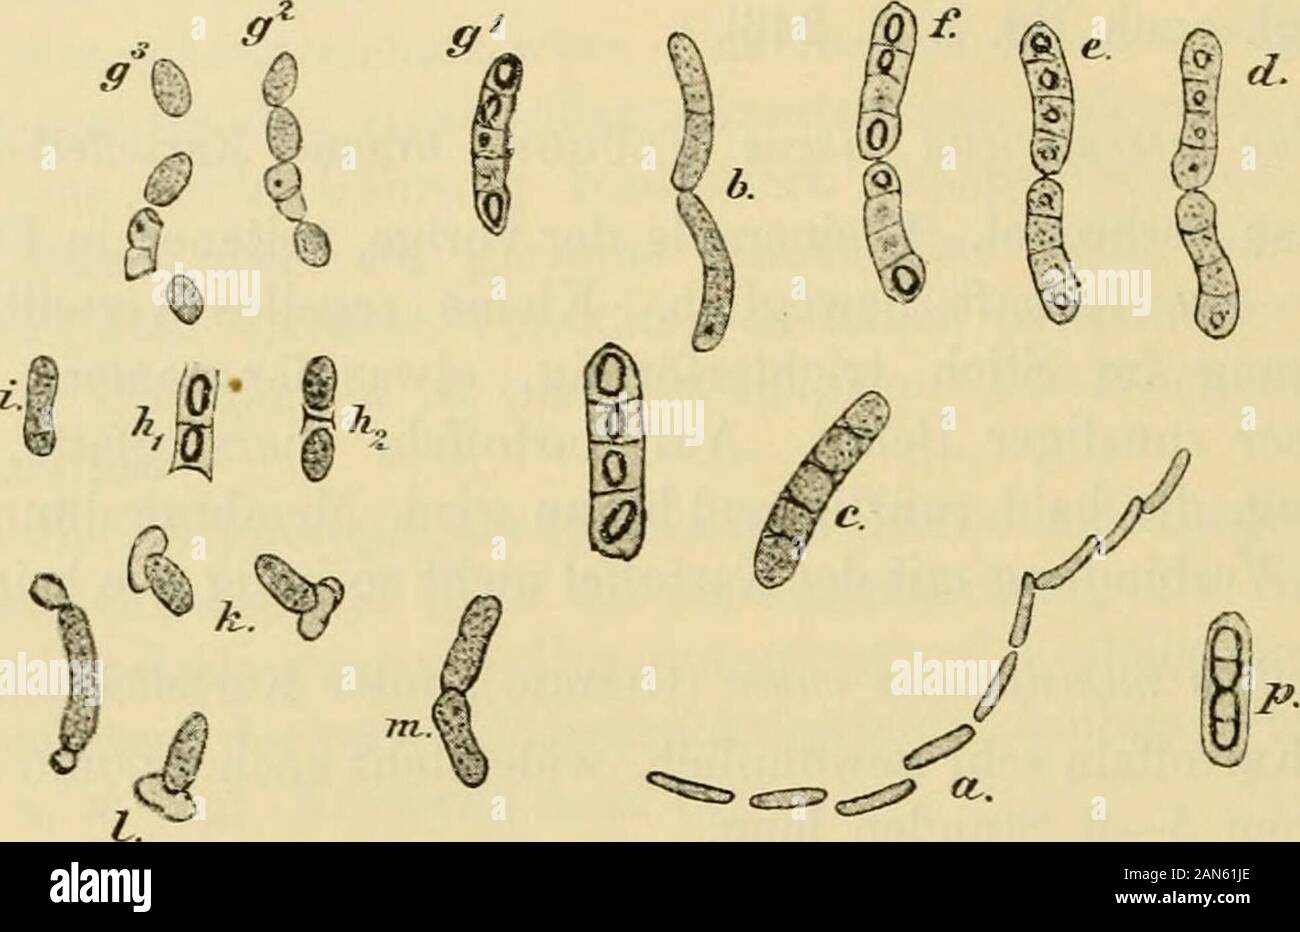 Die mikroorganismenMit besonderer berücksichtigung der ätiologie der infektionskrankheiten . Bacillus myeoicles (Flügge), Wurzel- oder Erdbacillus.Identisch mit Bac. ramosus (Eisexberg, L.).Im Wasser und namentlich im Erdboden sehr verbreitet.Bacillen etwas grösser und plumper Wie die Heubacillen, mühsam 200 Systematik der Bakterien. beweglich, häufig a Langen Scheinfäden. Sporen lordo, niittelständig,ellipsoidisch, leicht durch Doppelfärbung darzustellen. Wachstum rechtcharakteristisch. Aerobier. In Gelatineplatten Kolonien, die durch ihreausgedehnte Verästelung un Schimmelpilze erinnern. Ba Foto Stock